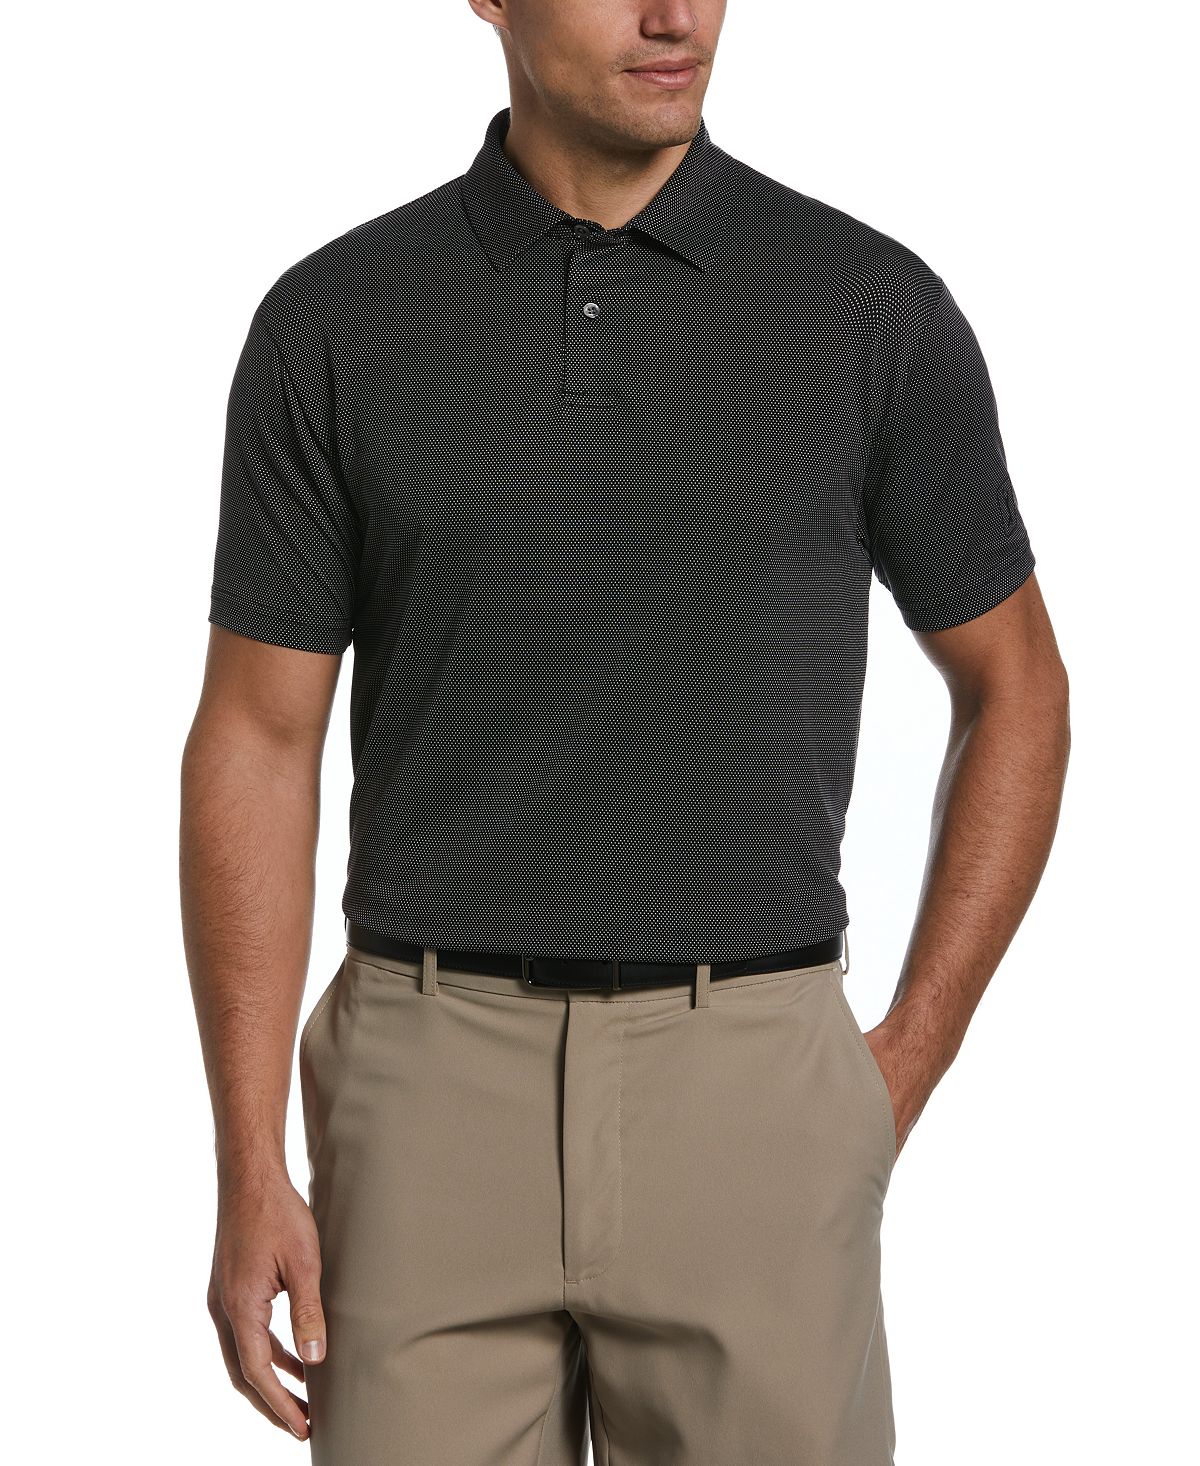 Мужская рубашка-поло с короткими рукавами и фактурной текстурой «птичий глаз» PGA TOUR